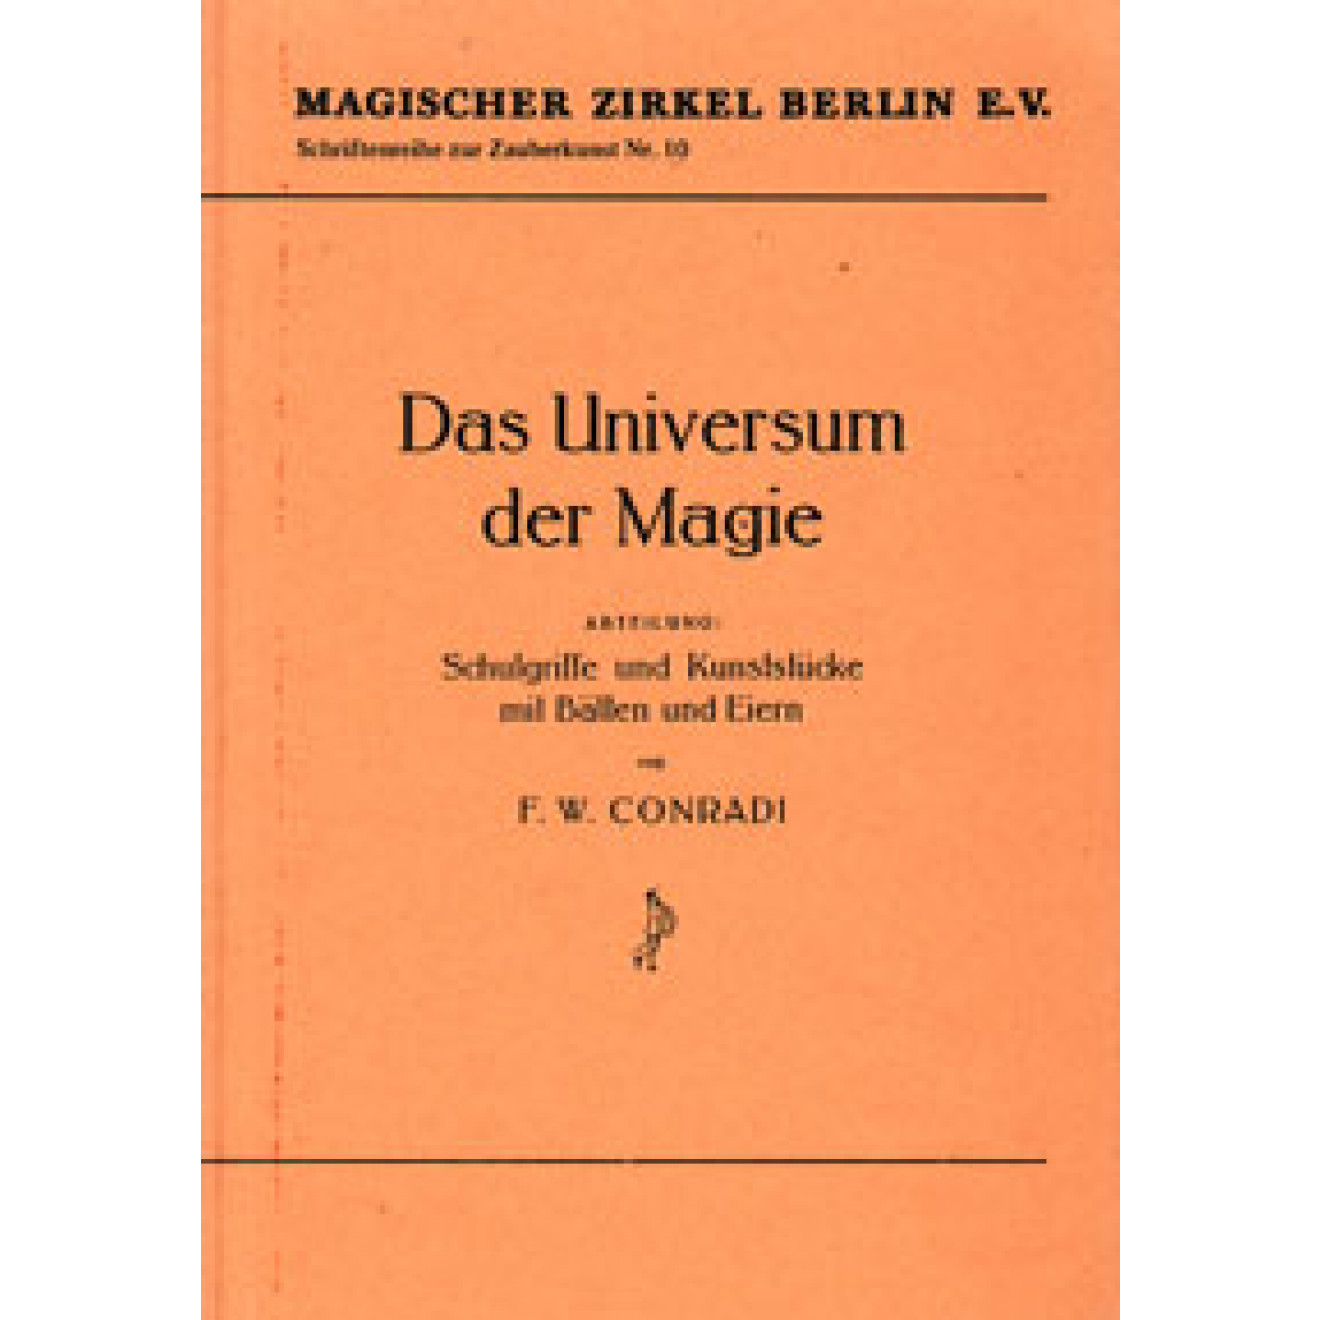 Das Universum der Magie (Nachdruck des MZ Berlin, Nr.10)